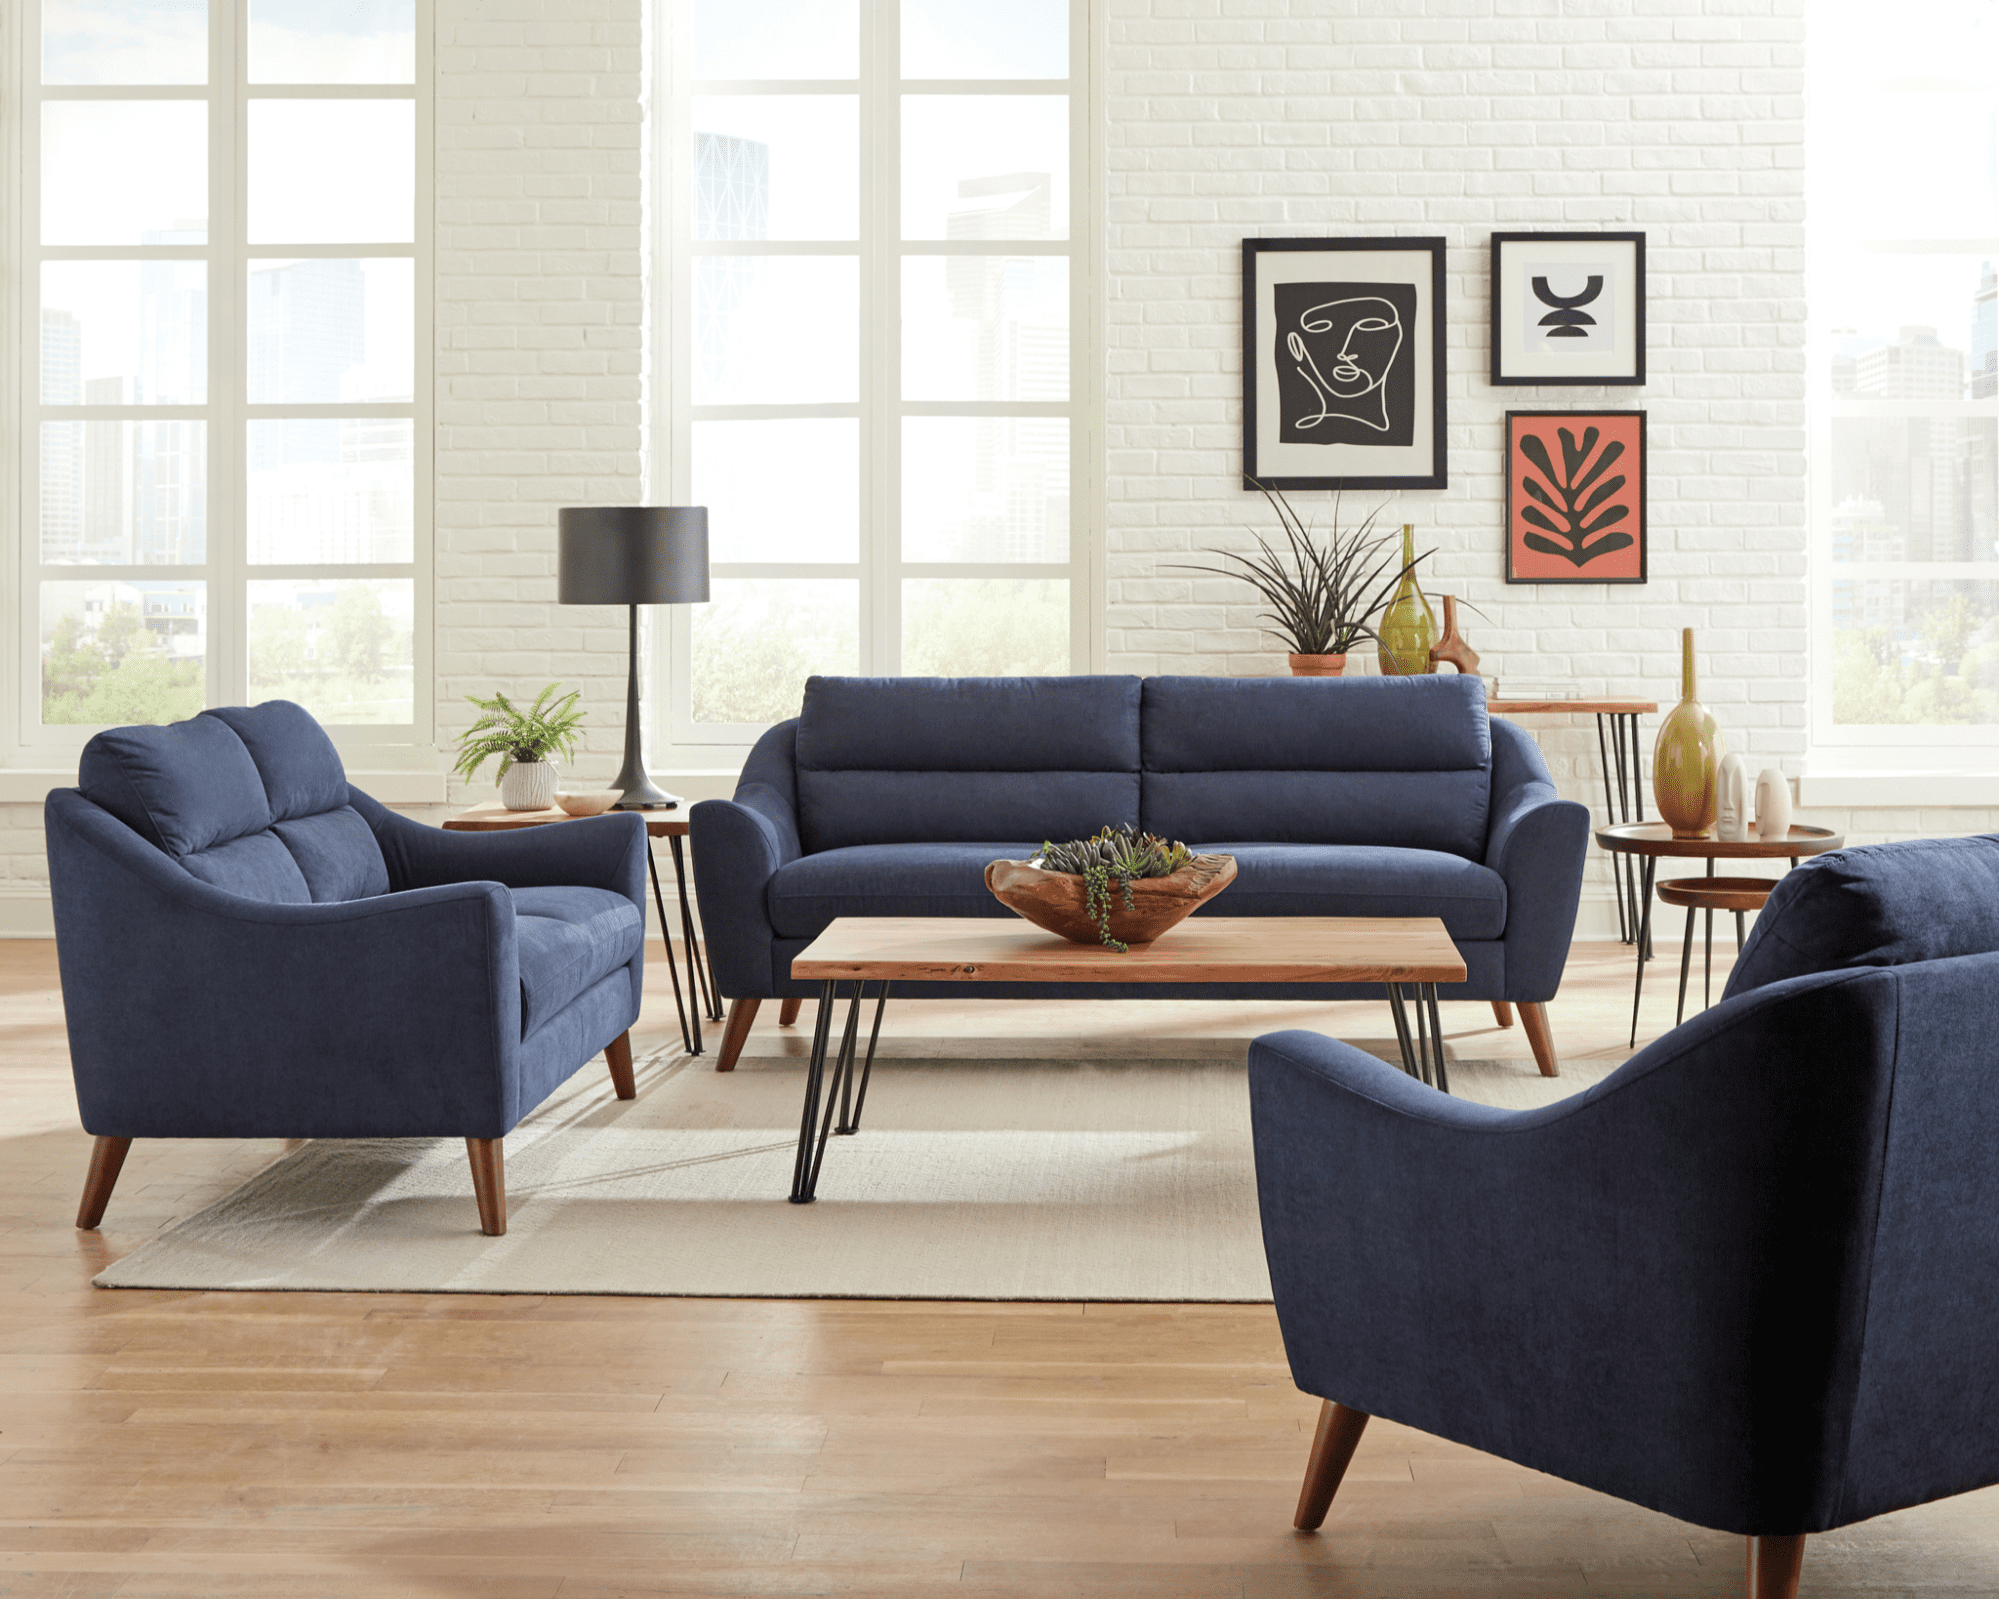 sala de estar moderna com móveis combinando